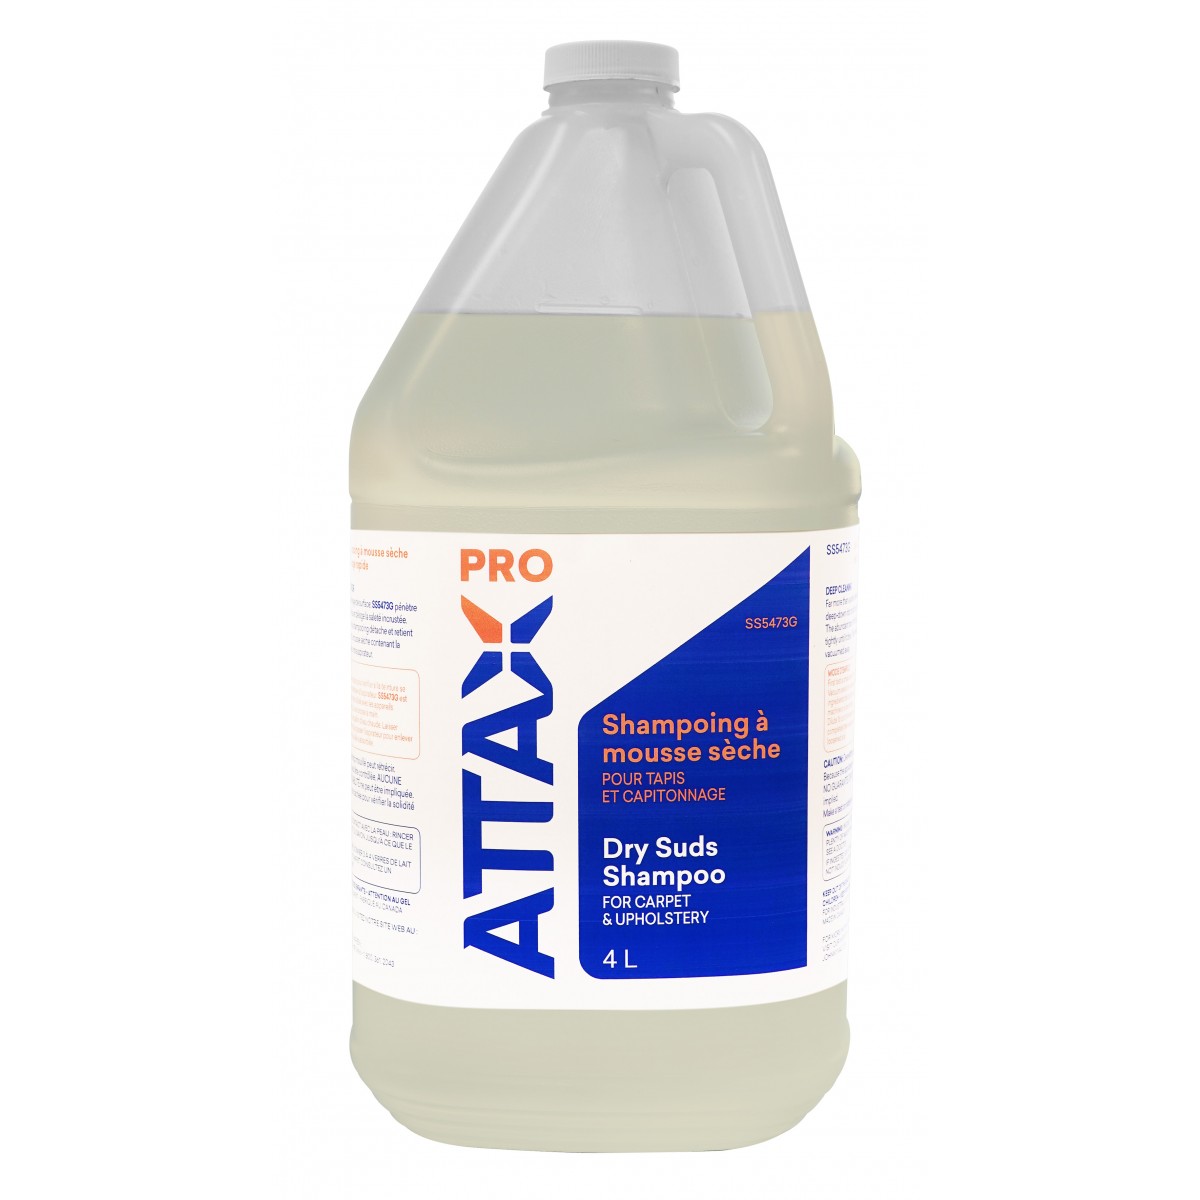 Shampoing professionel à mousse sèche pour tapis et capitonnage - 1,06 gal  (4 L) - Attax ®